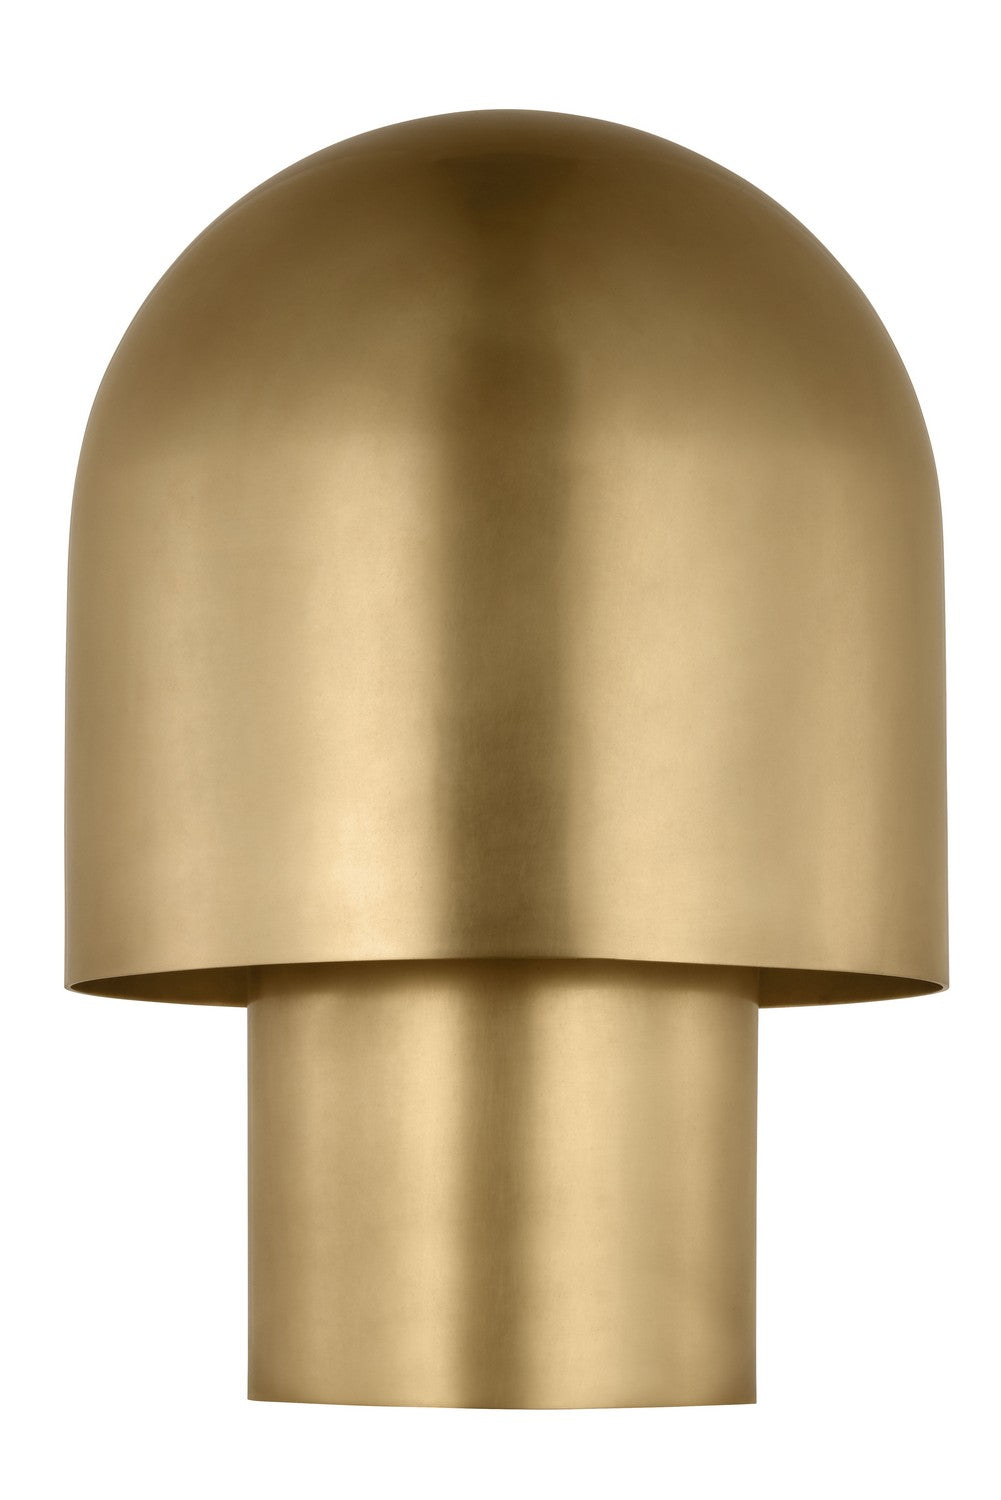 Visual Comfort Modern - SLTB32427NB - LED Table Lamp - Kennett - Natural Brass